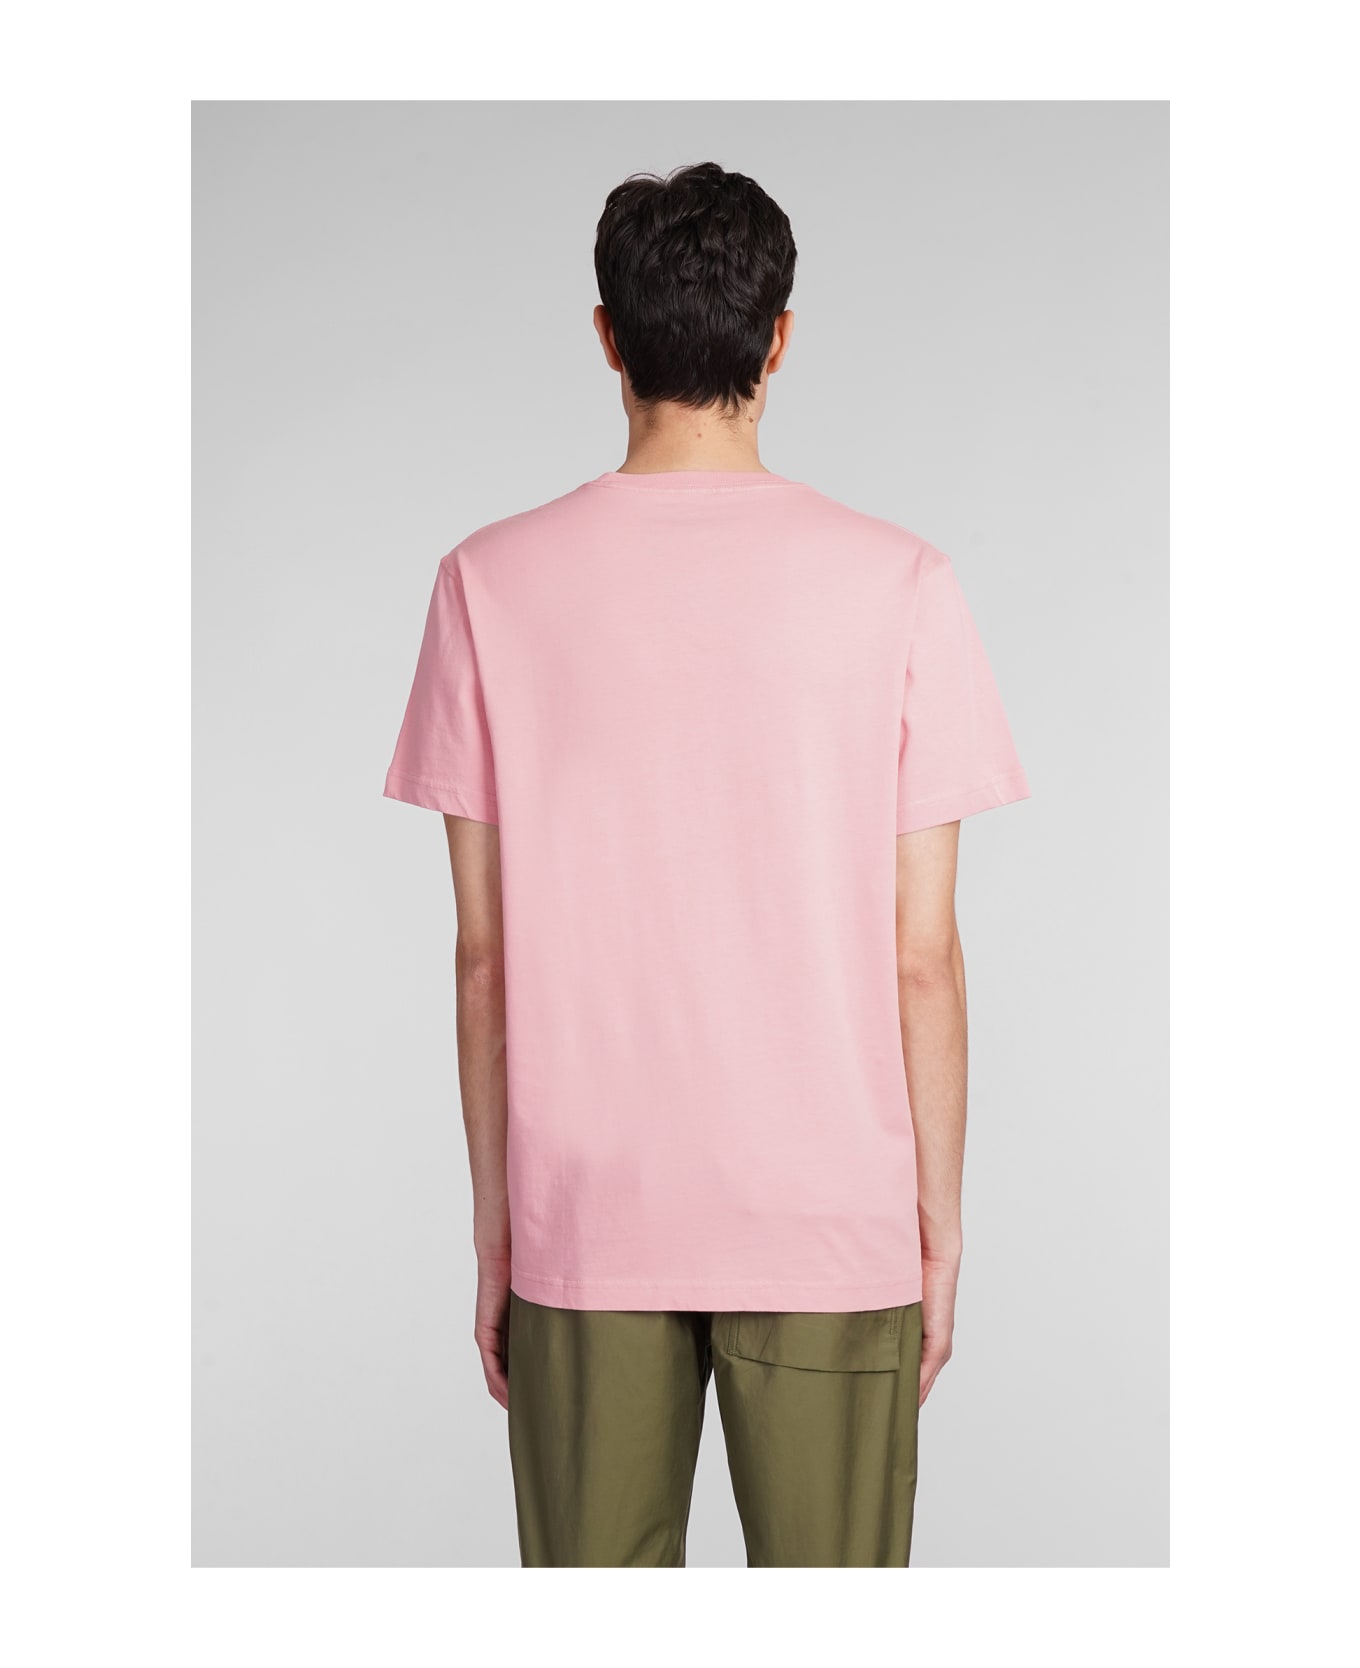 Maharishi T-shirt In Rose-pink Cotton - rose-pink